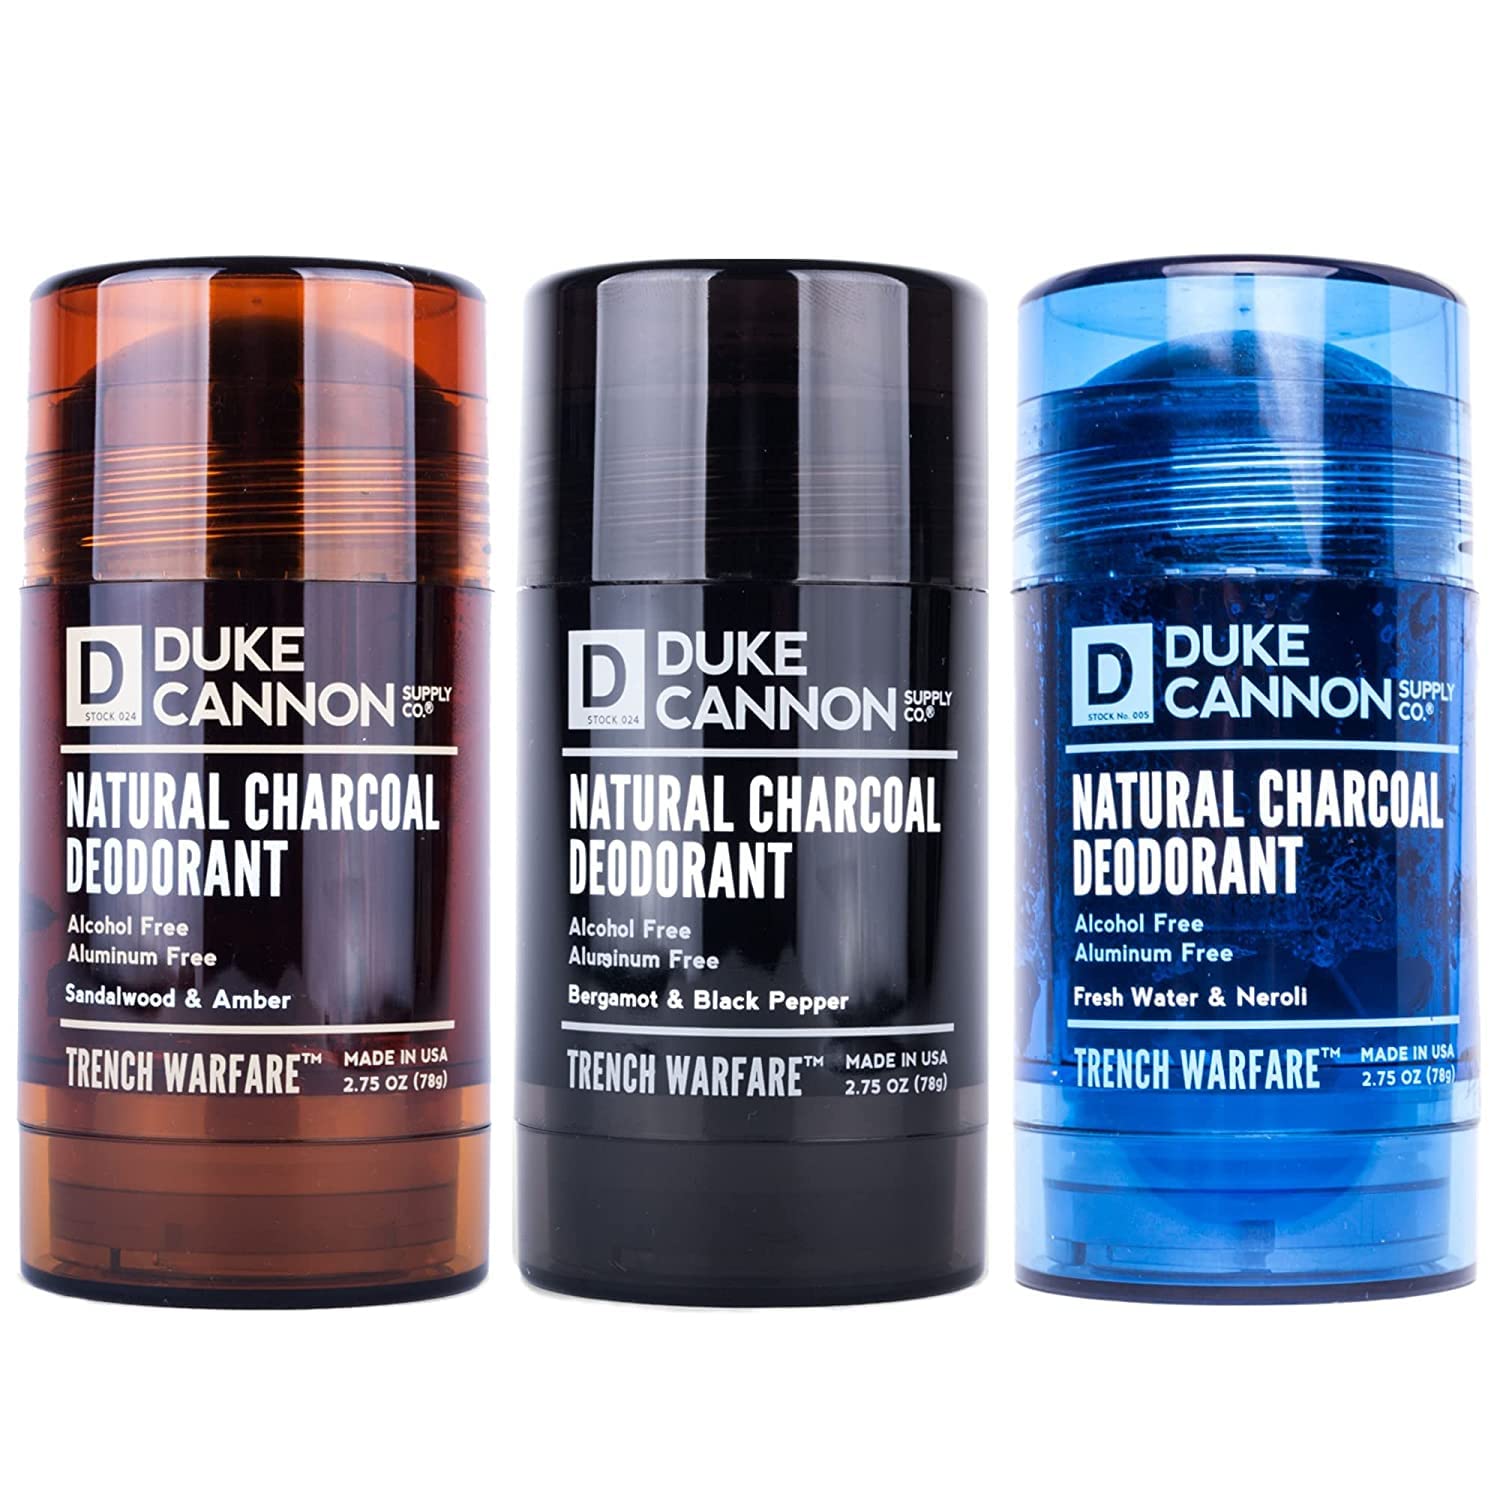 Duke Cannon Natural Charcoal Variety Pack: Bergamot & Black Pepper, Fresh Water & Neroli, Sandalwood & Amber - 2.75 Oz (78g) each